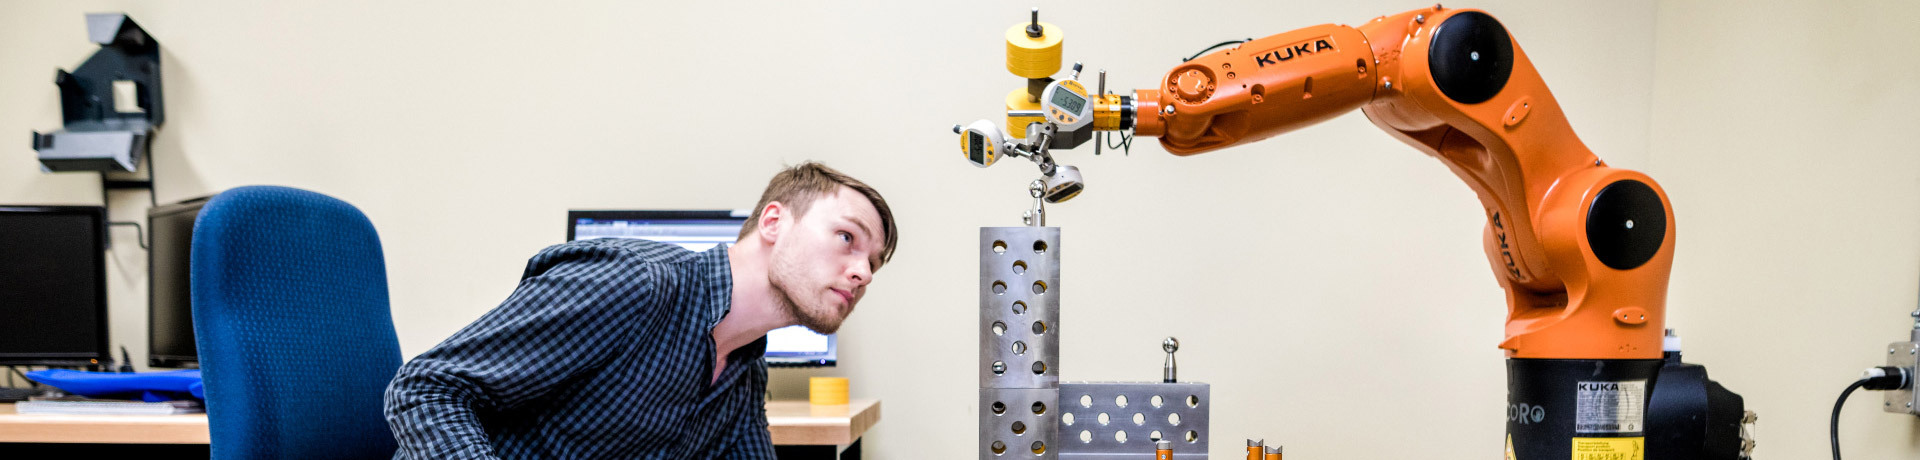 Étudiant interagissant avec un bras robotique KUKA en laboratoire.